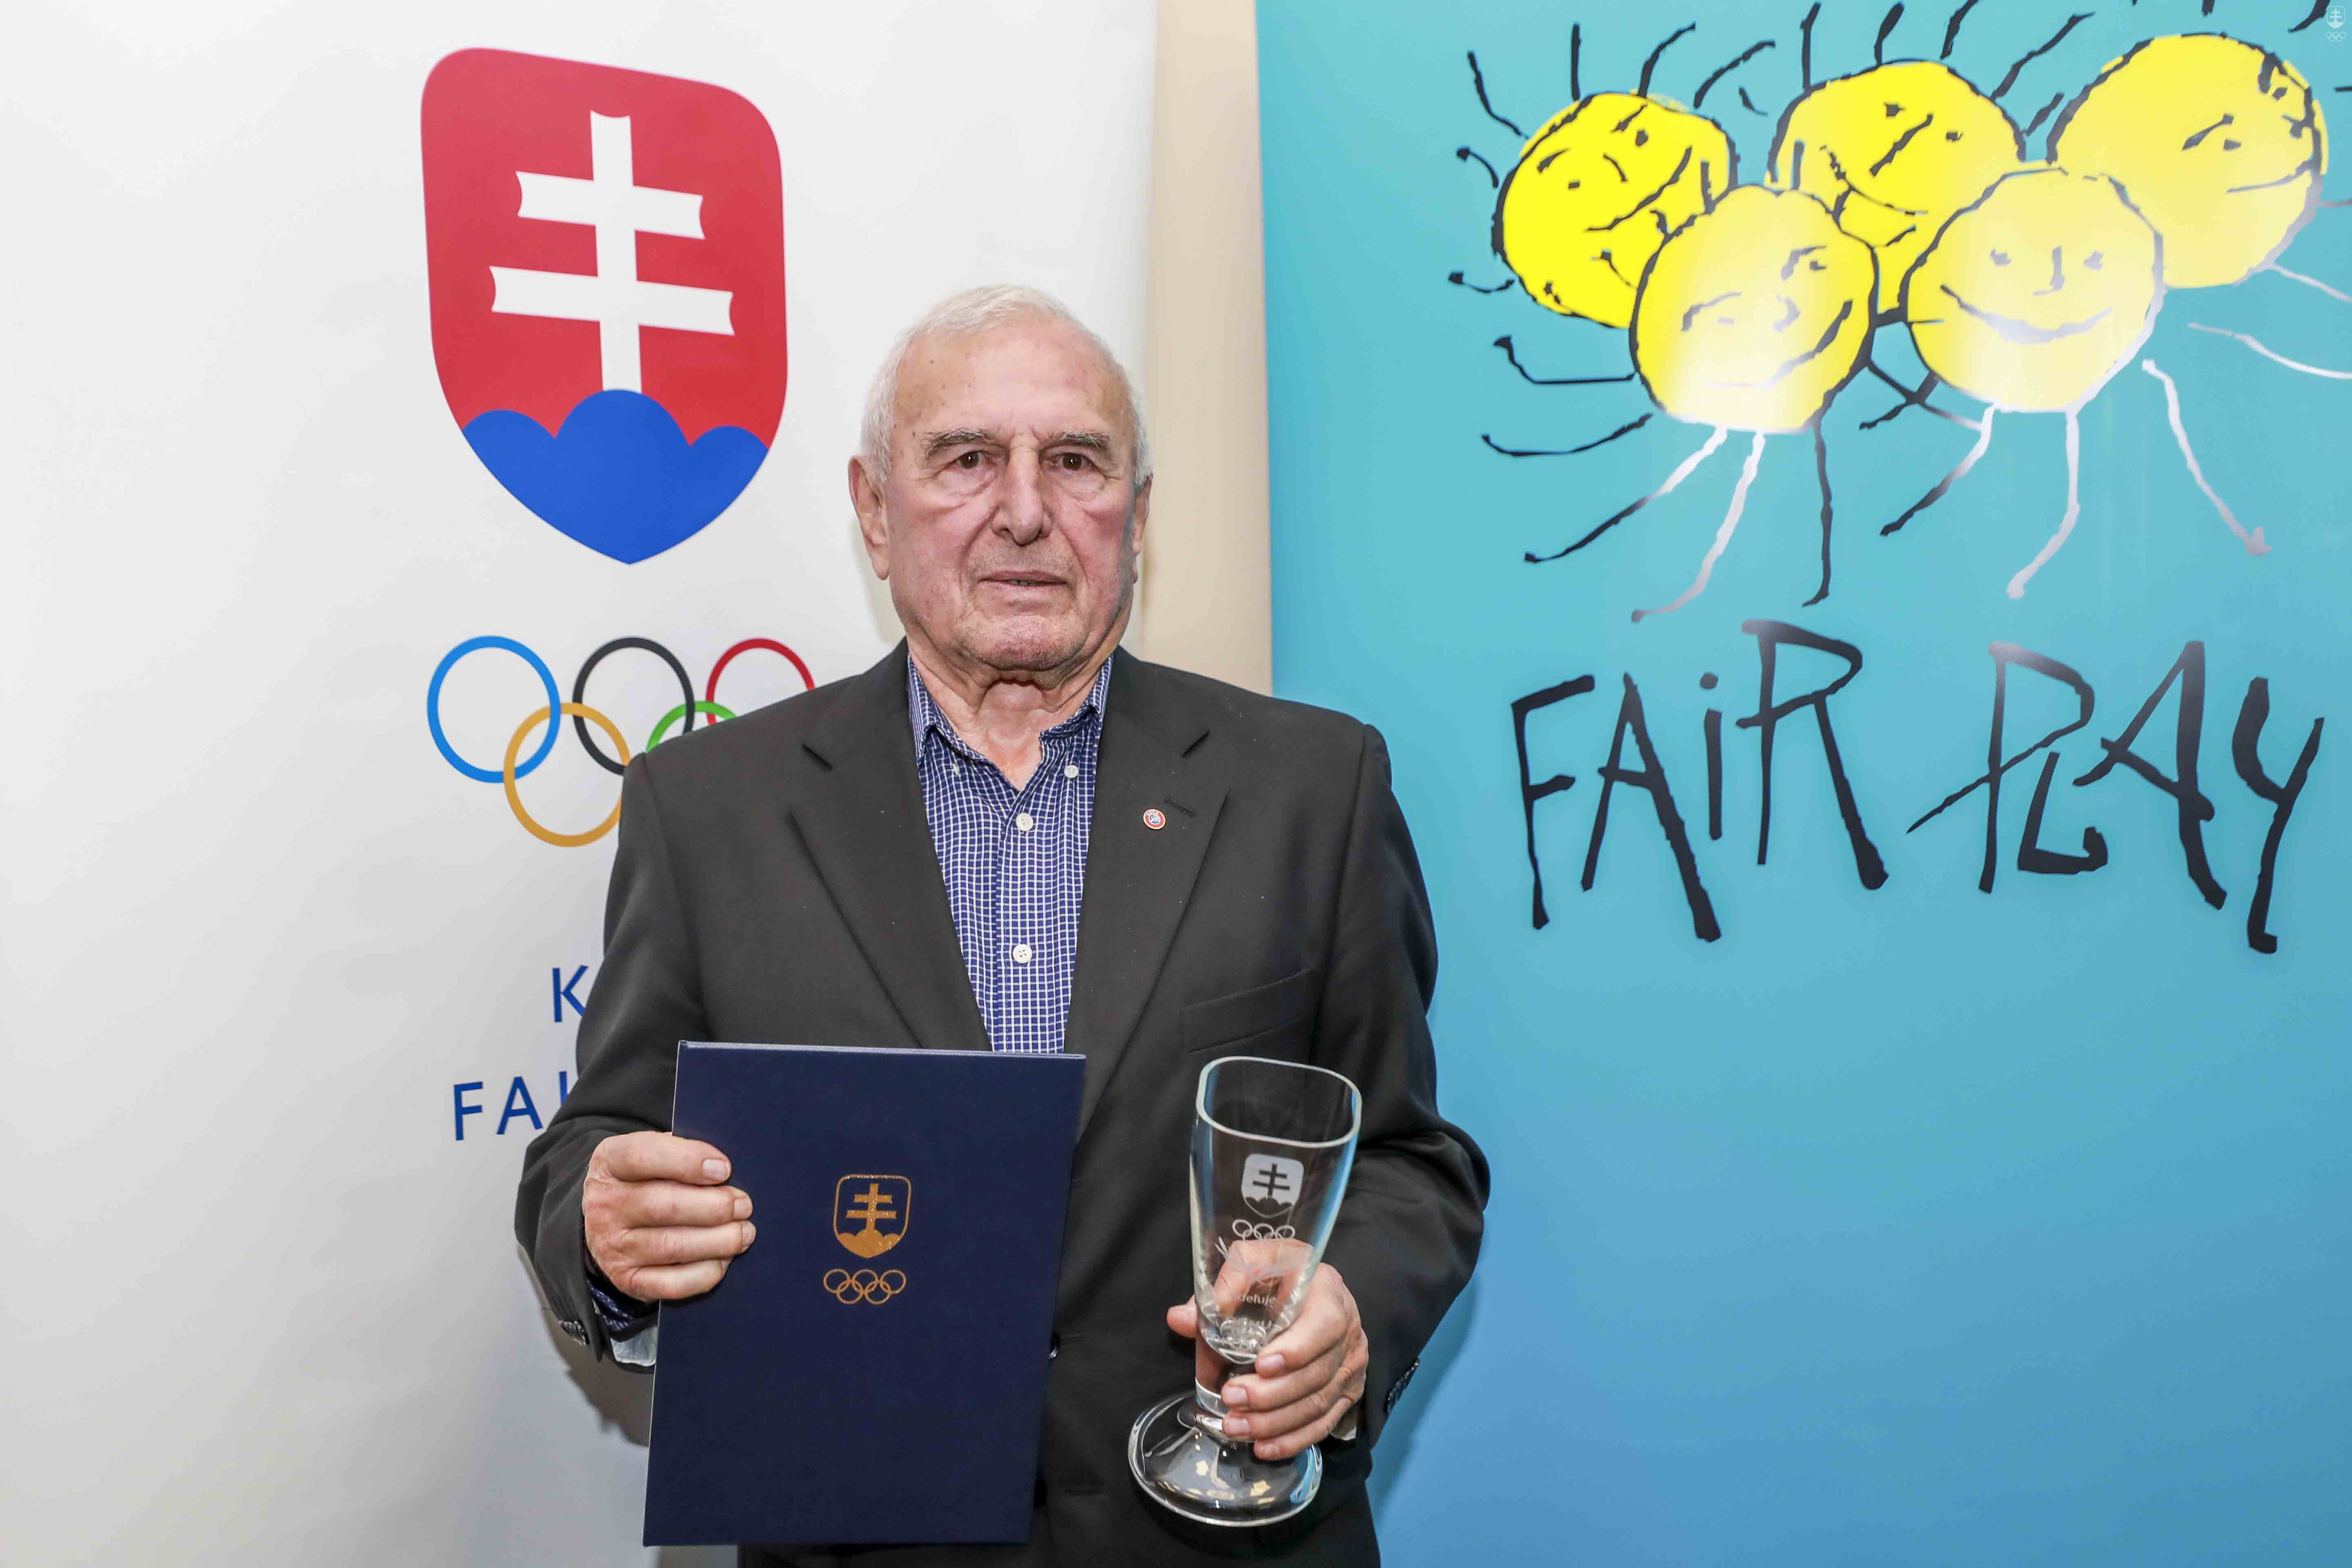 Najvyšší stupeň ocenení predstavuje Cena Jána Popluhára, ktorá je zároveň i výročným ocenením Slovenského olympijského a športového výboru. Za uplynulý rok 2019 ju za dlhodobé pôsobenie v duchu fair play získal bývalý futbalový tréner Jozef Jankech. 